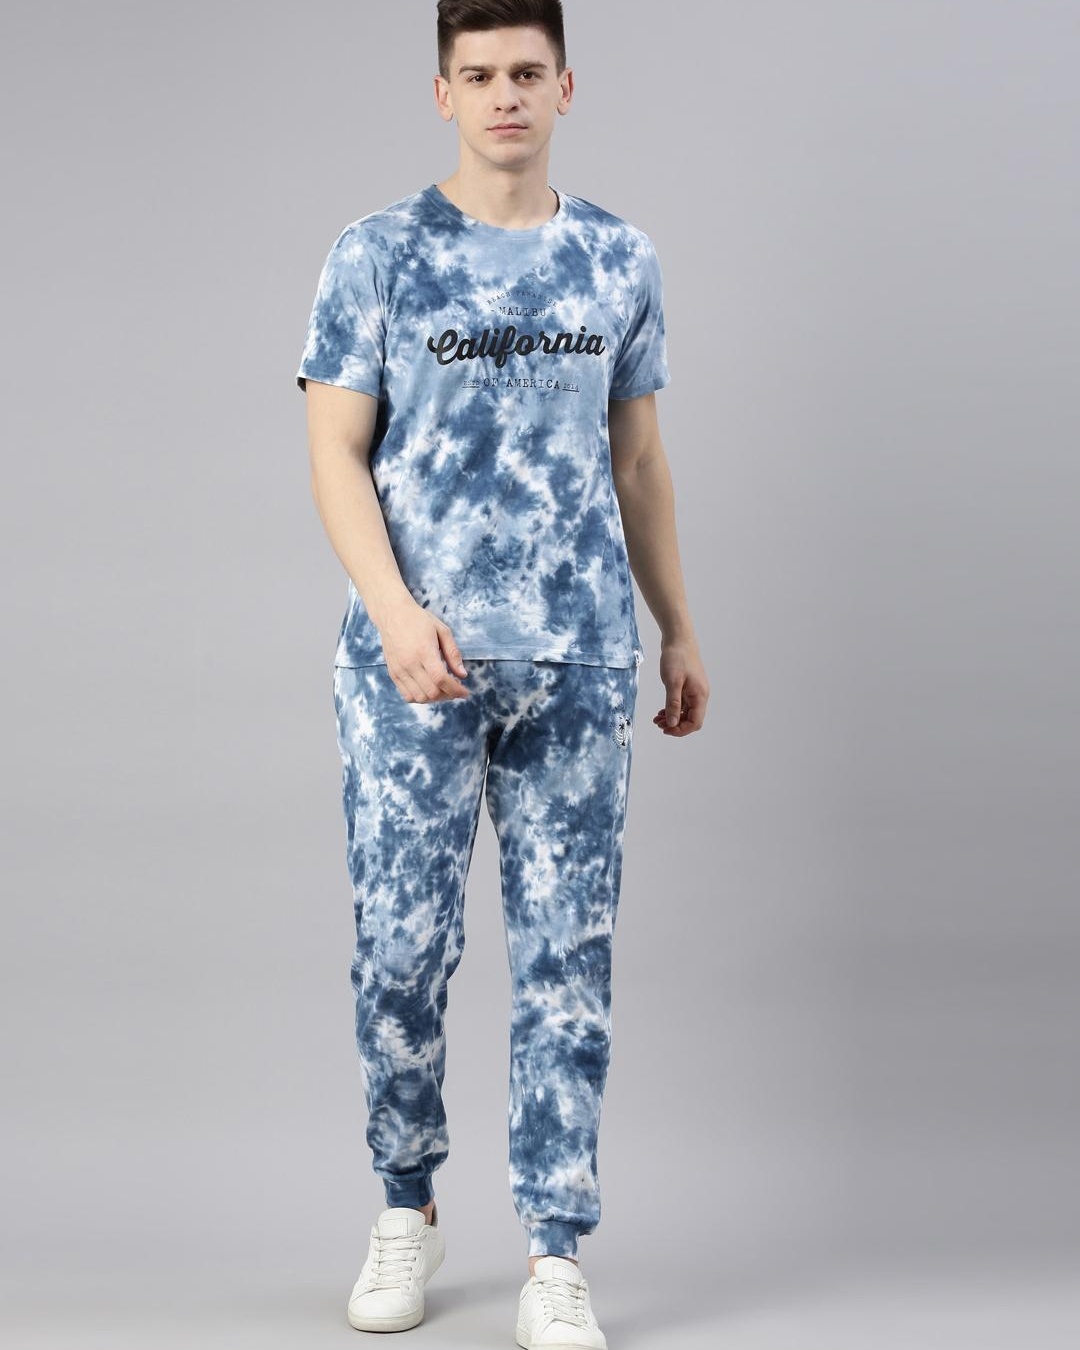 Buy Men's Blue Tie & Dye T-shirt & Pyjama Set Online in India at Bewakoof